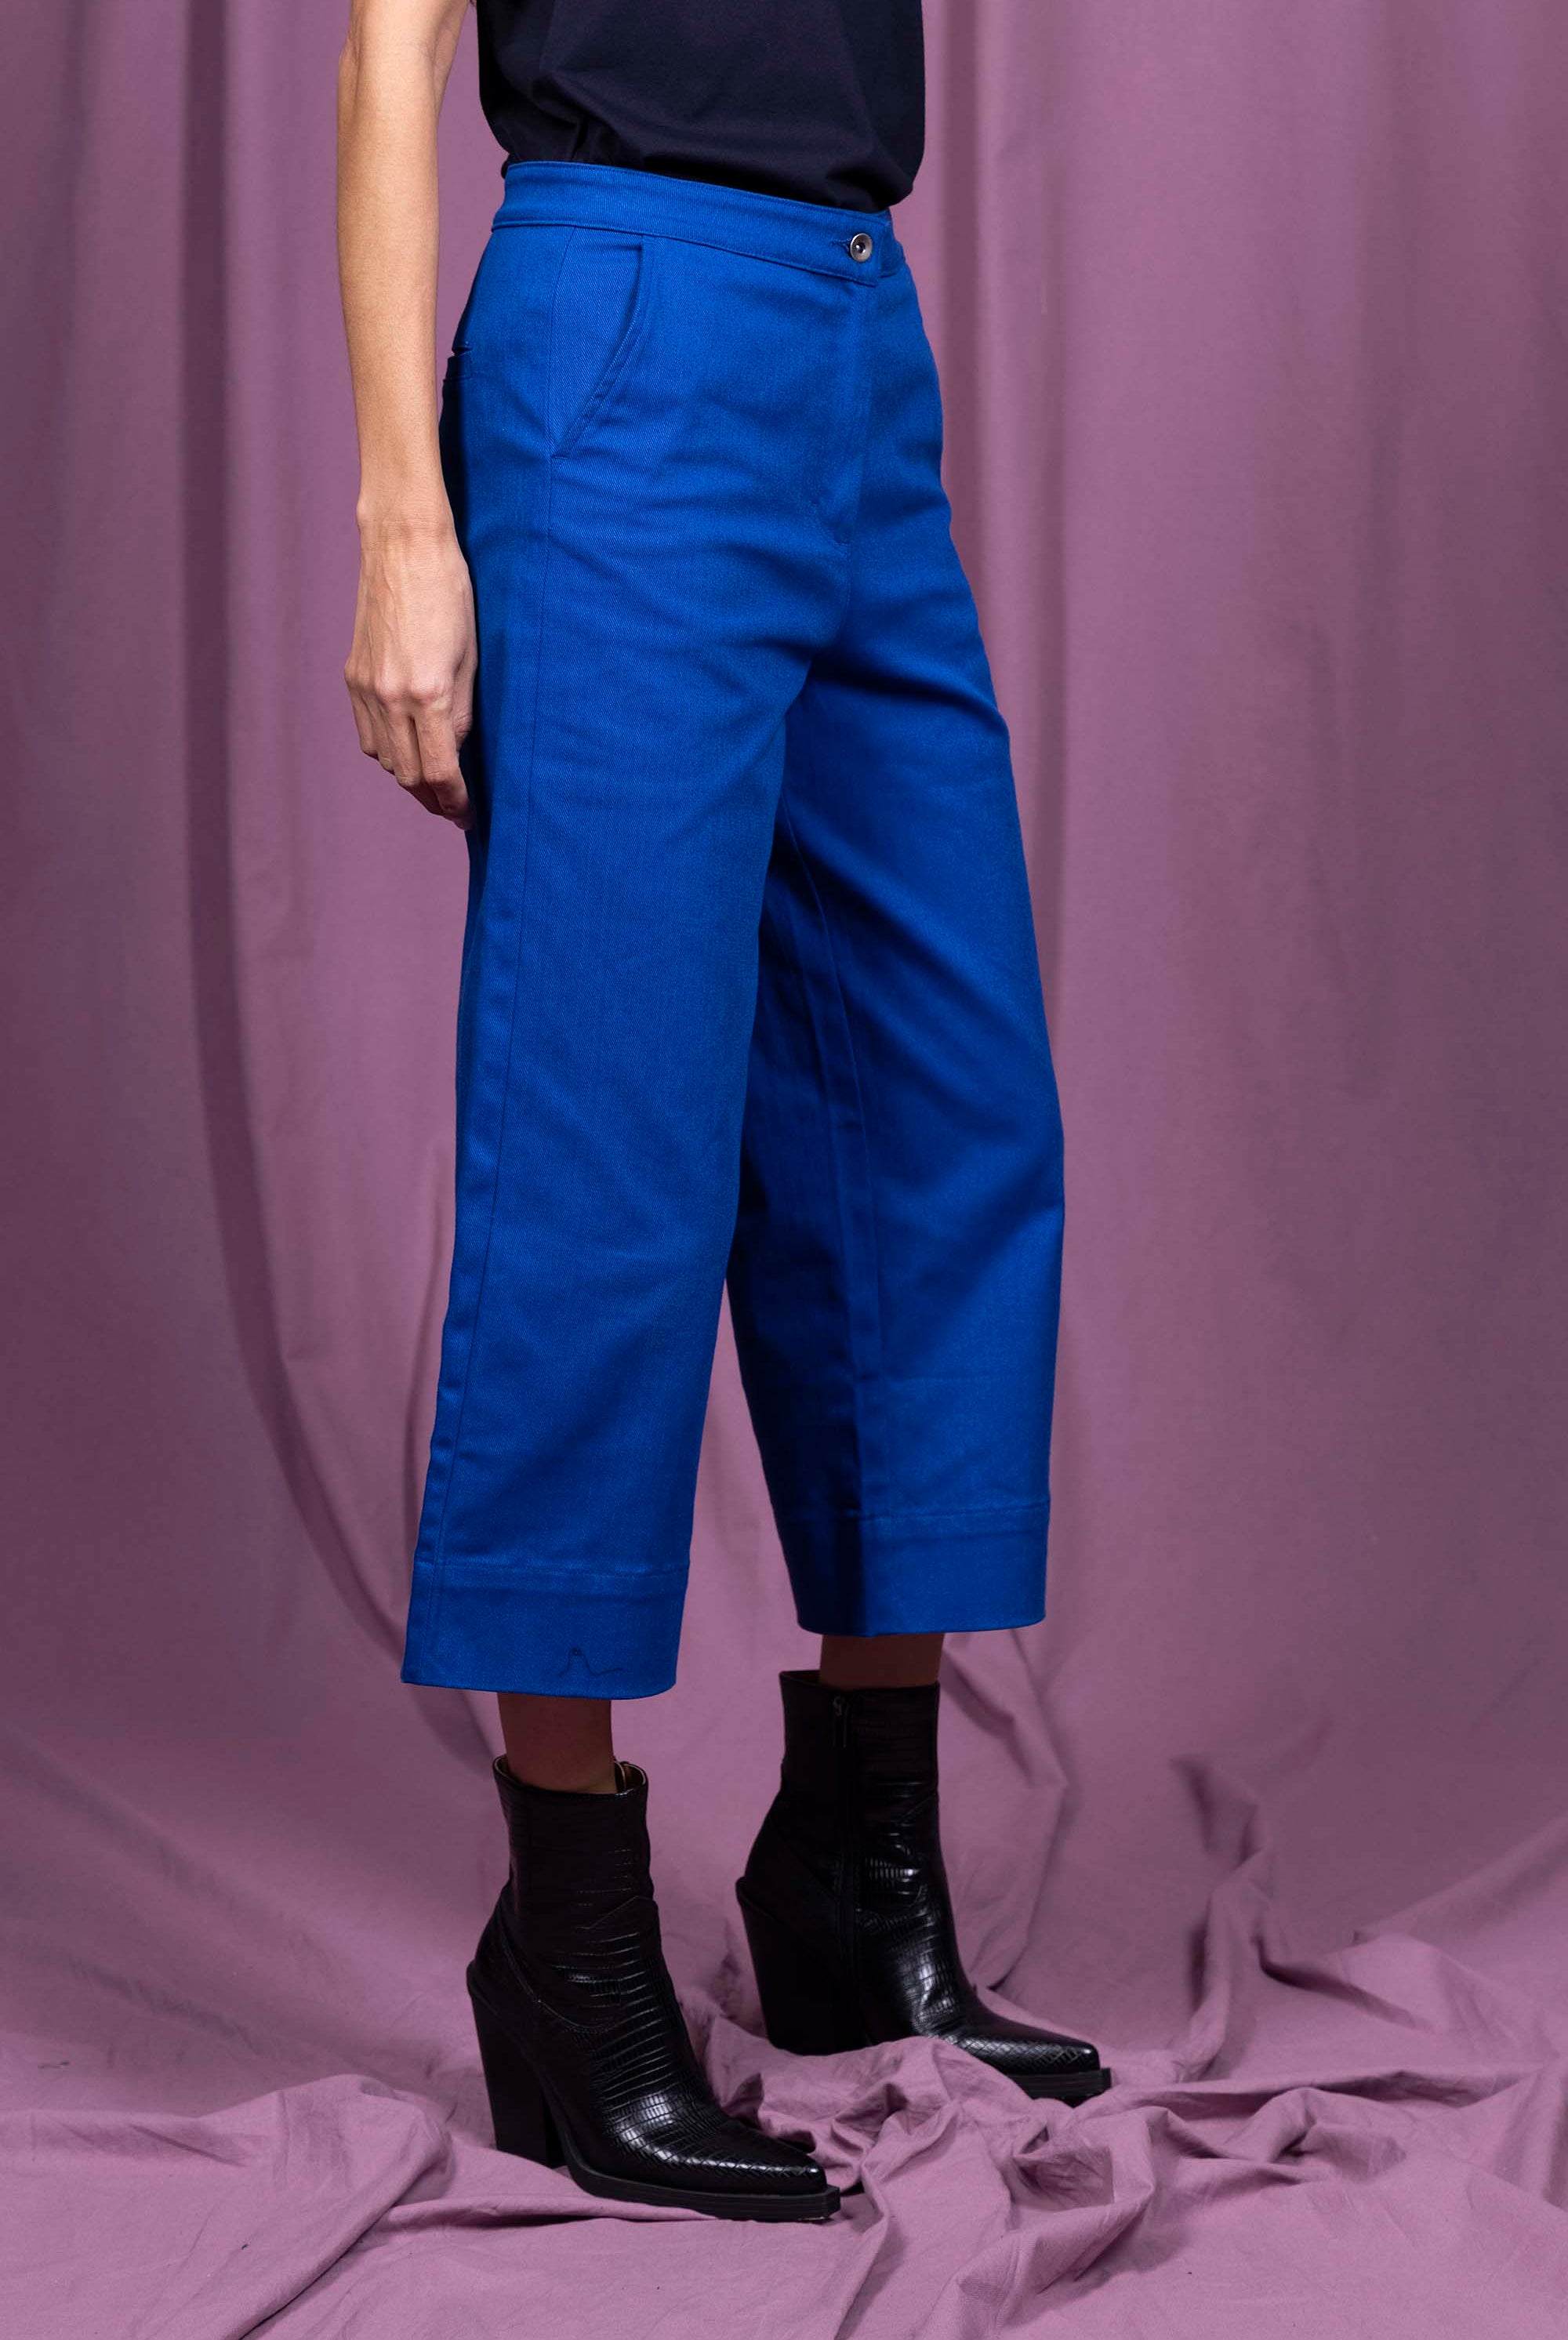 Pantalon Cristina Bleu pièce intemporelle, élégance et poésie urbaine, fabrication certifiée